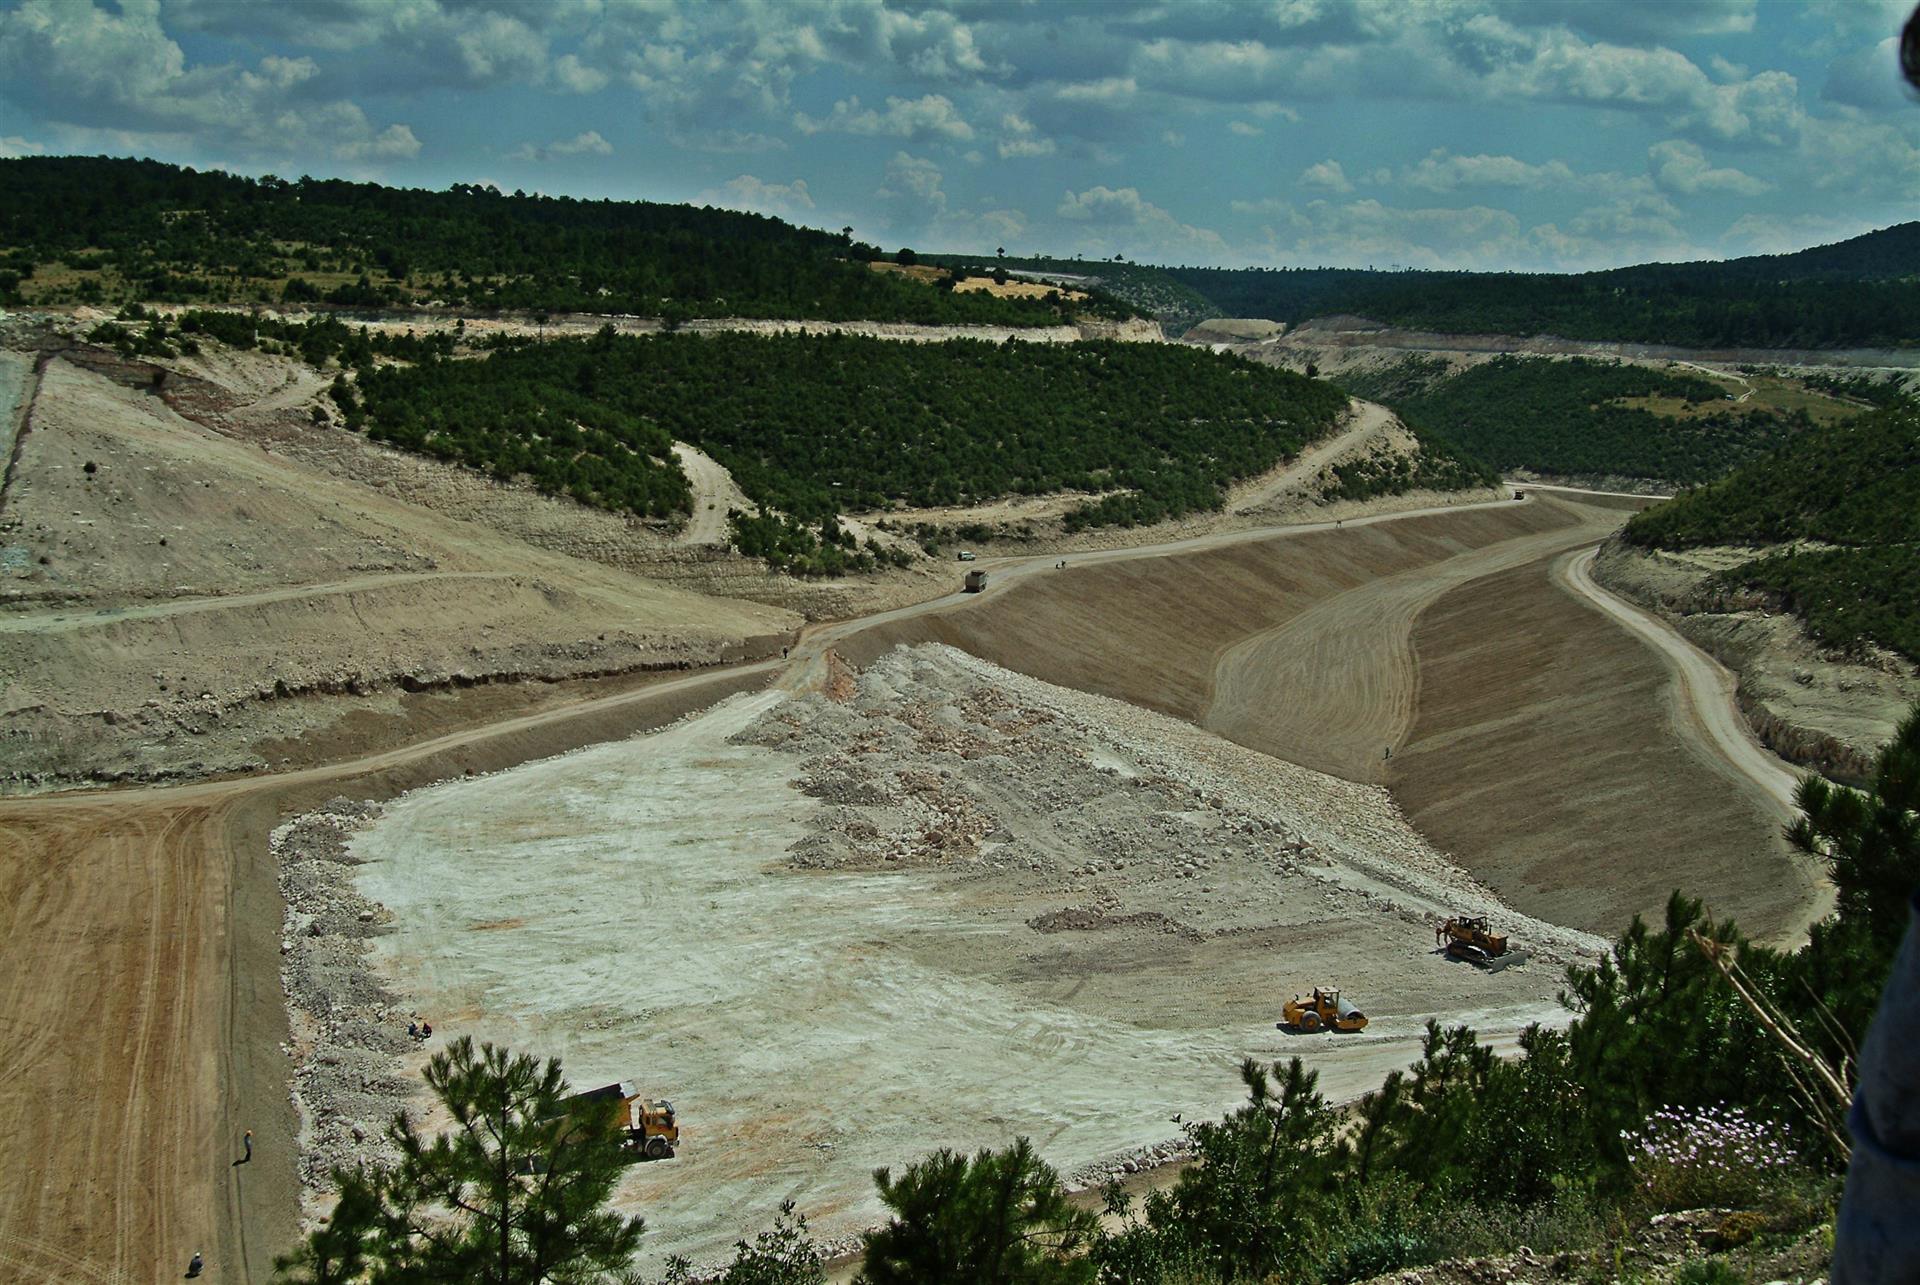 Emet yeni borik tesisi atık barajı